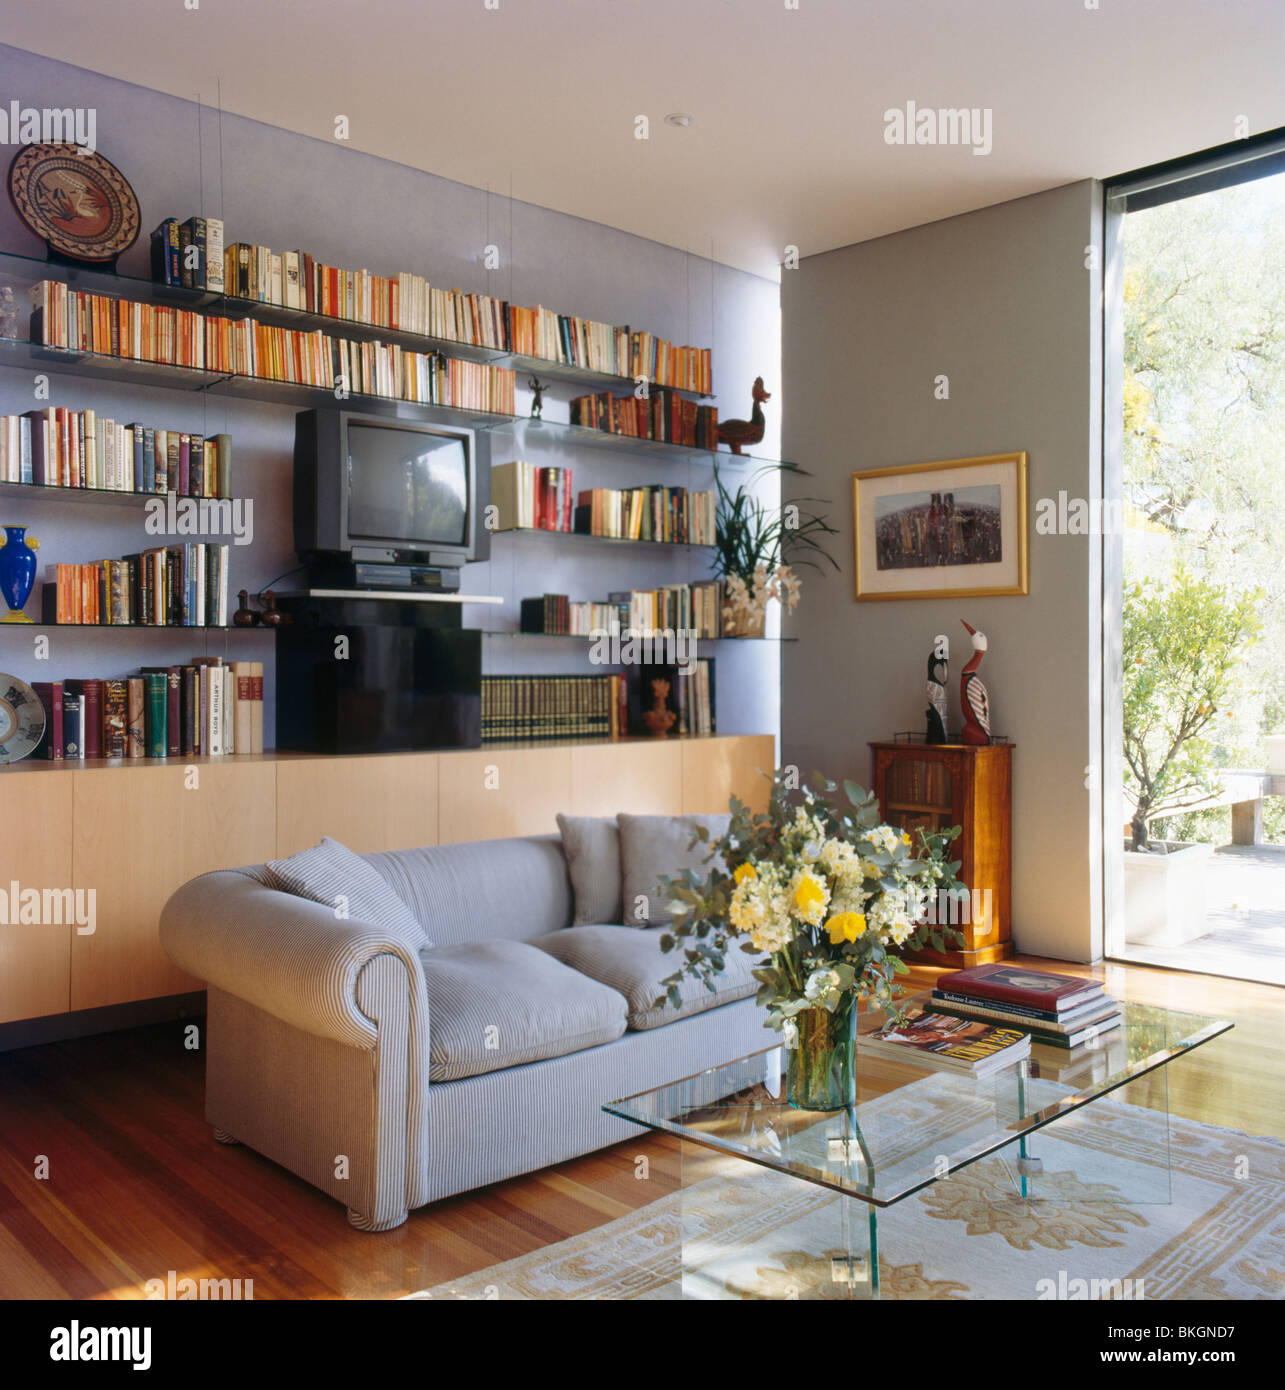 Bücherregale an Wand hinter grauen Sofa in kleinen modernen grauen  Wohnzimmer mit Couchtisch aus Glas Stockfotografie - Alamy